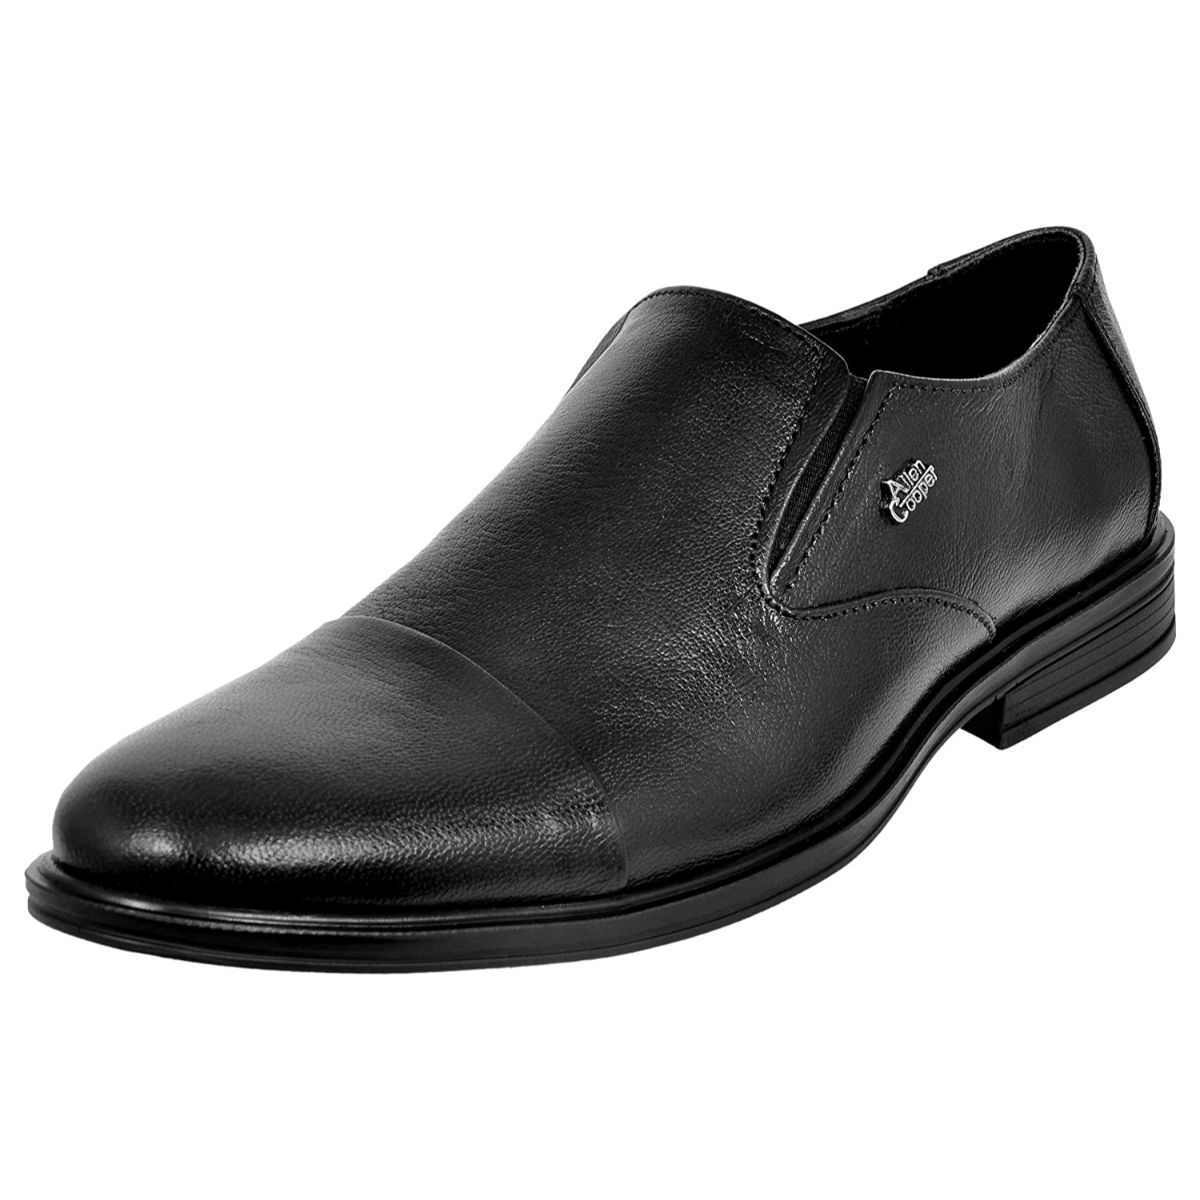 Allen Cooper Black Formal Shoes For Men - 7